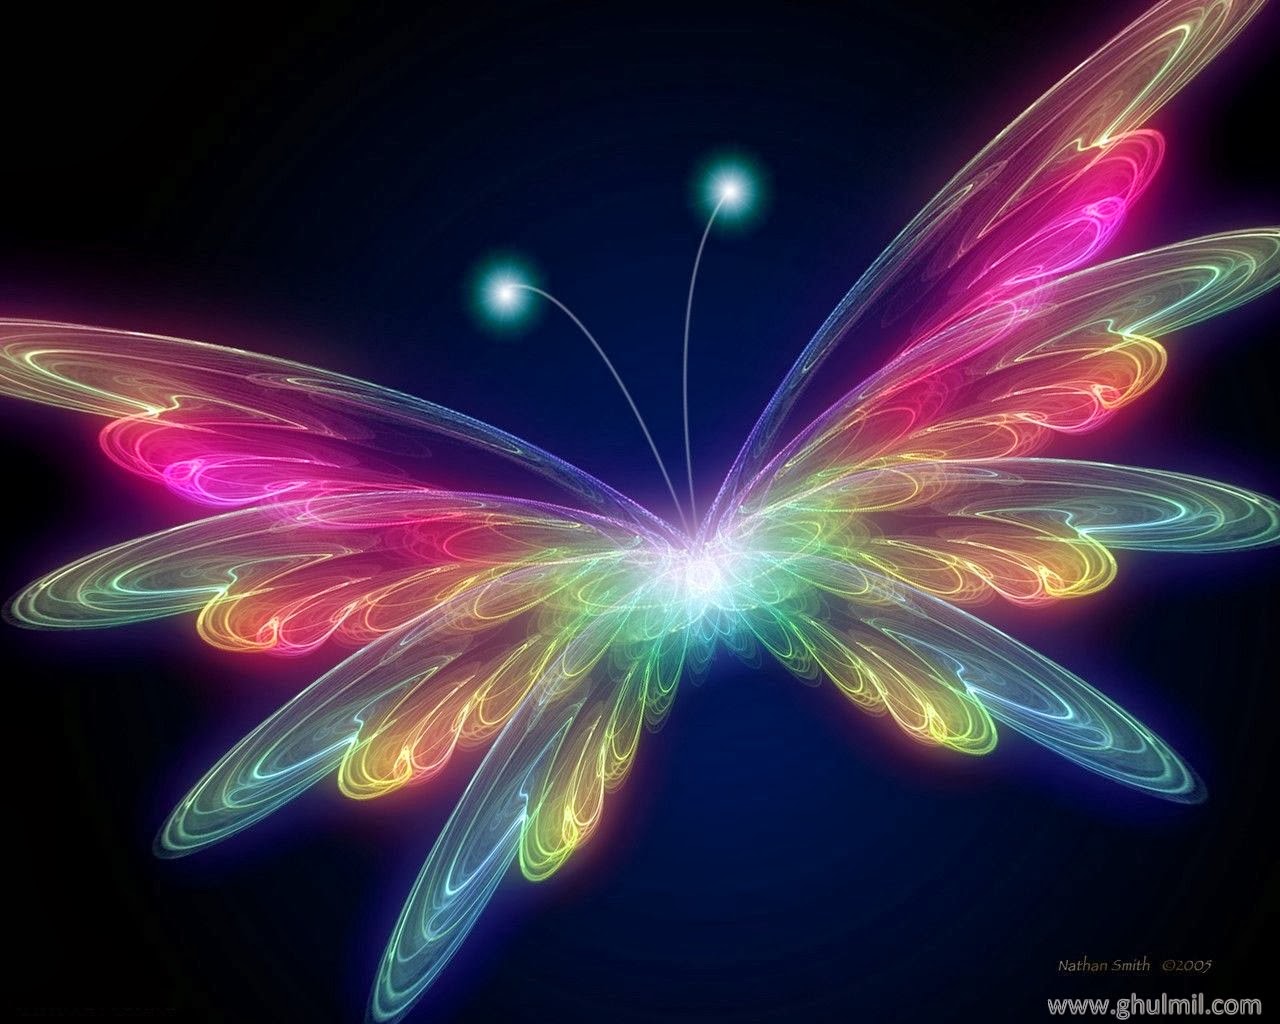 Live Butterfly Wallpaper Beautiful Desktop